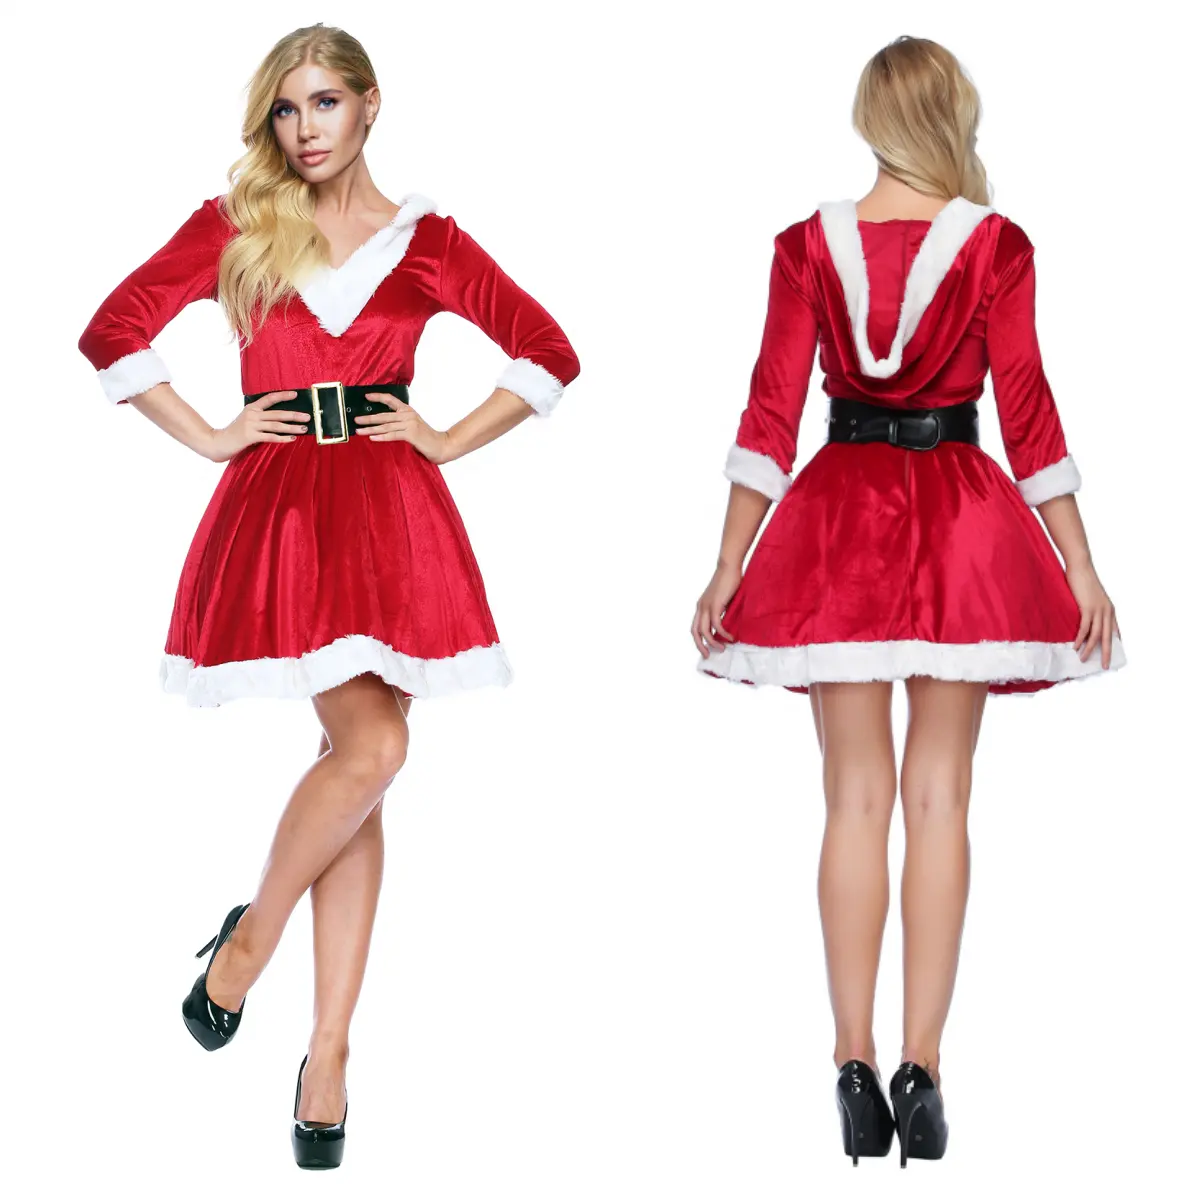 Abito da donna Babbo Natale rosso vestito in poliestere abbigliamento natalizio per adulti per ragazze